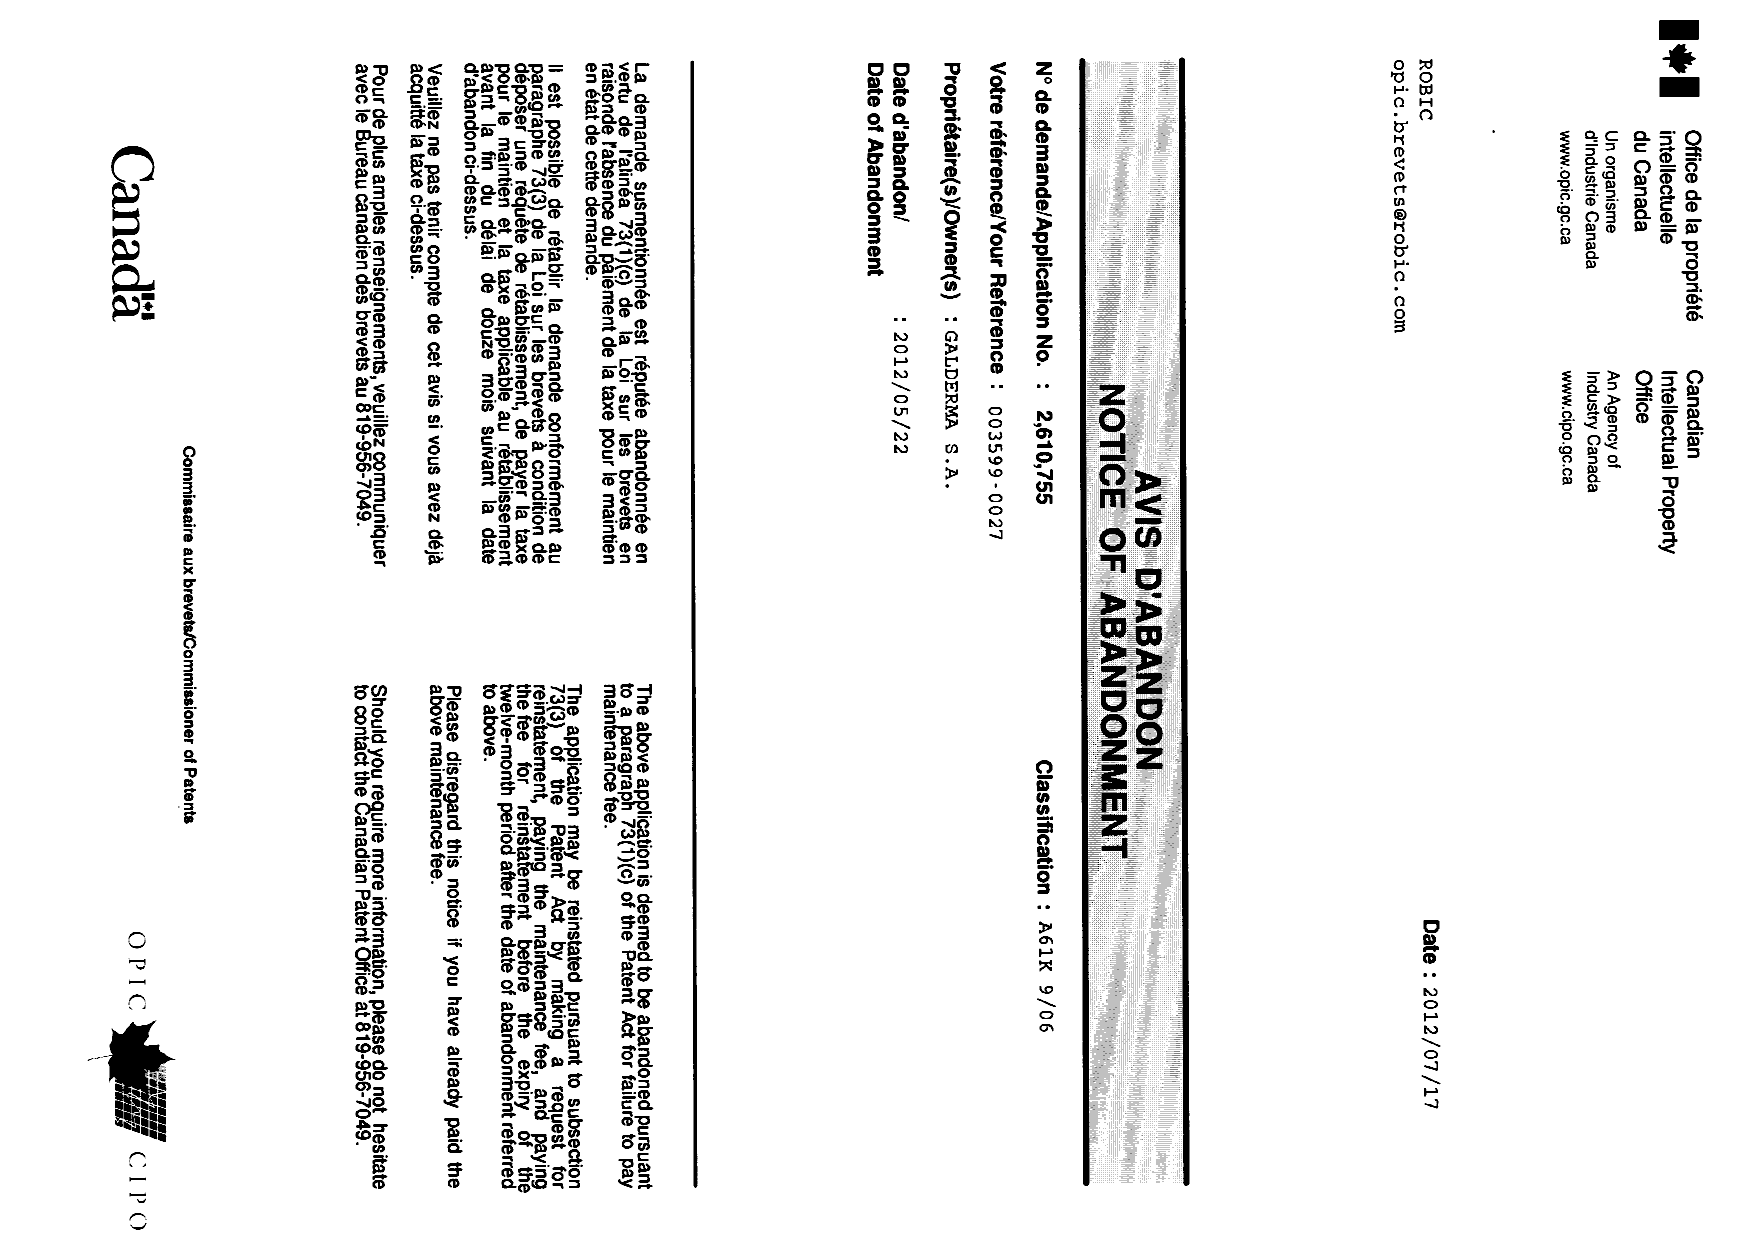 Document de brevet canadien 2610755. Correspondance 20111217. Image 1 de 1